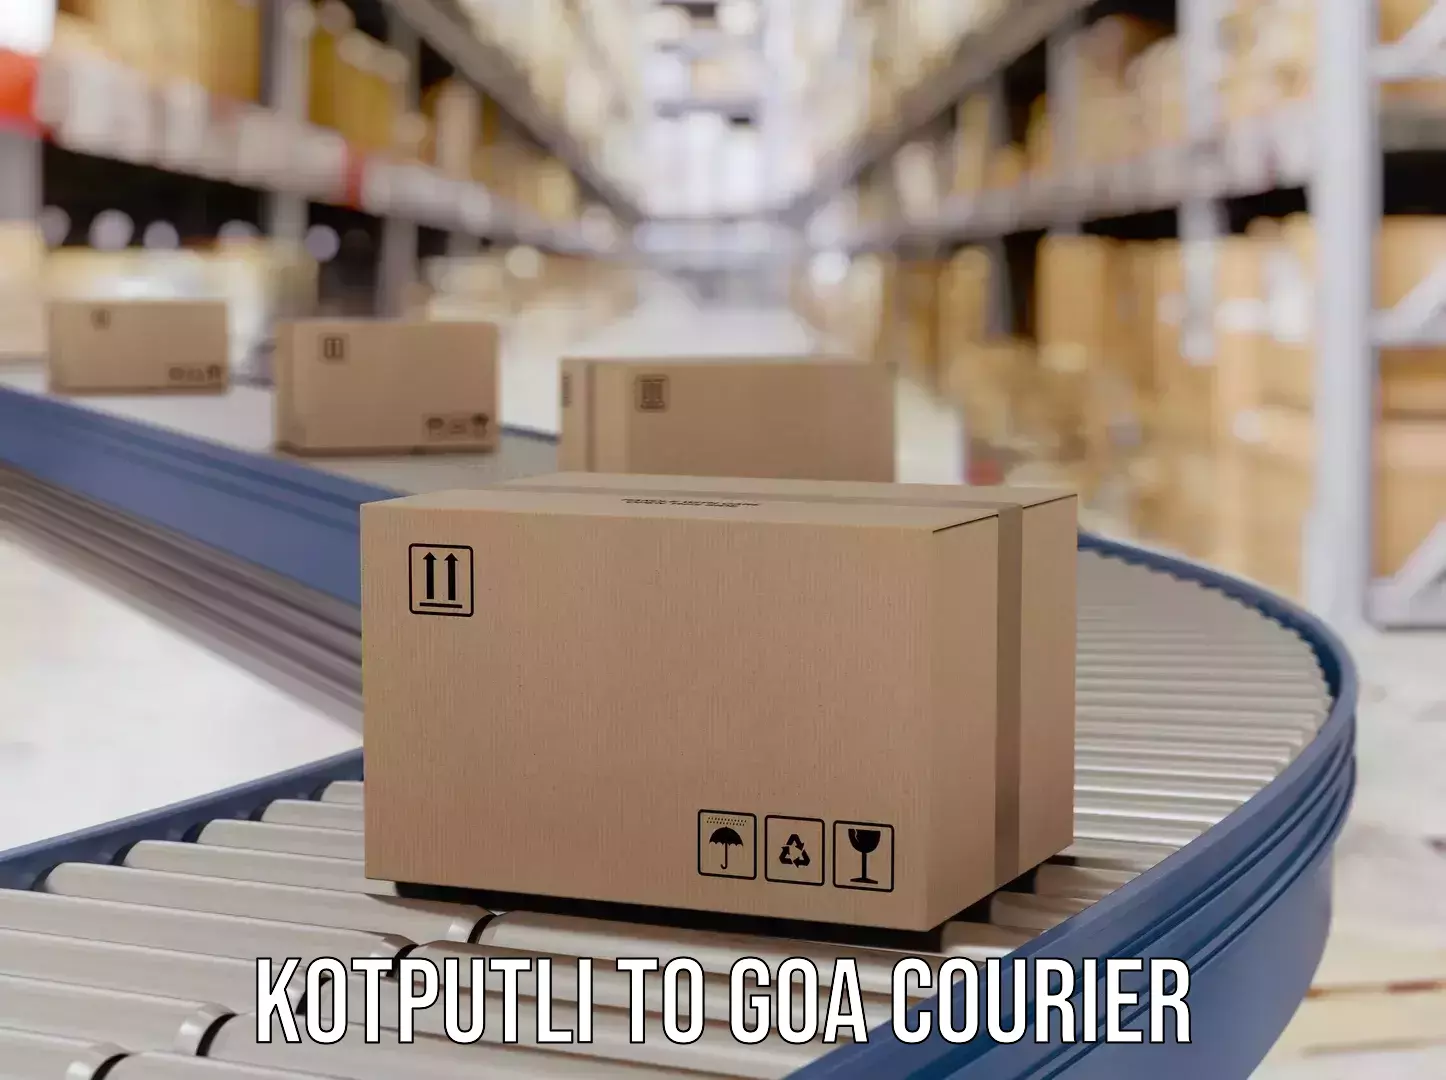 Cost-effective courier options in Kotputli to Goa